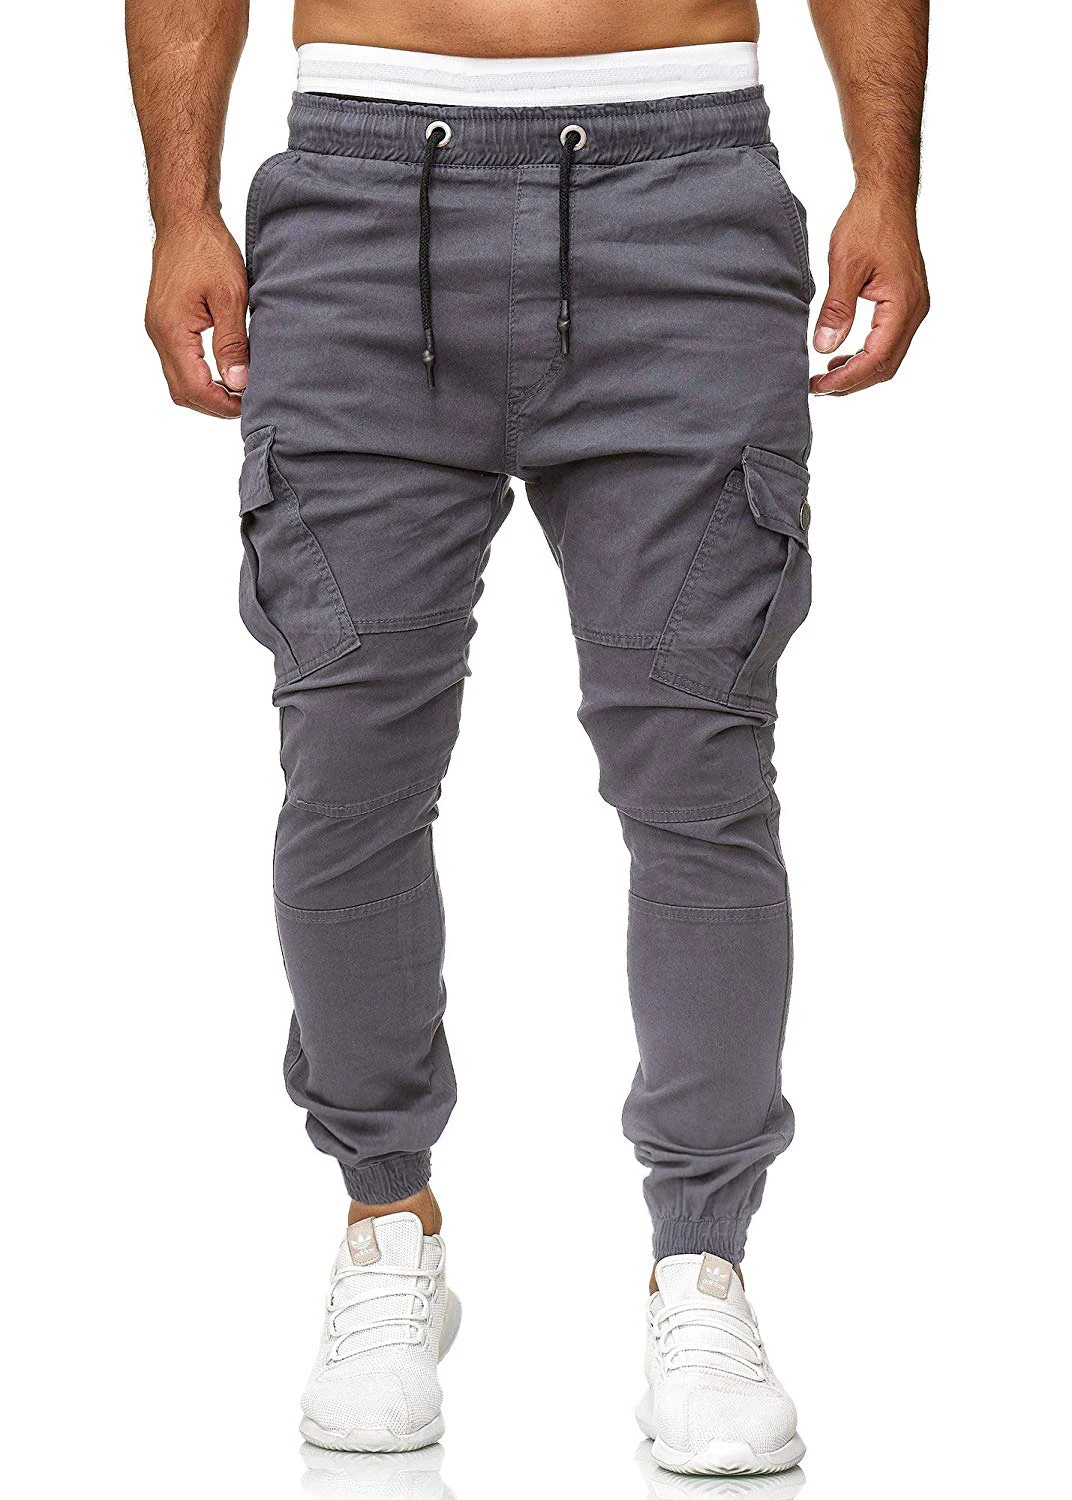 Брюки 2018 новые Брендовые мужские прямые брюки облегающие городские повседневные узкие карманы длинные штаны с накладными карманами